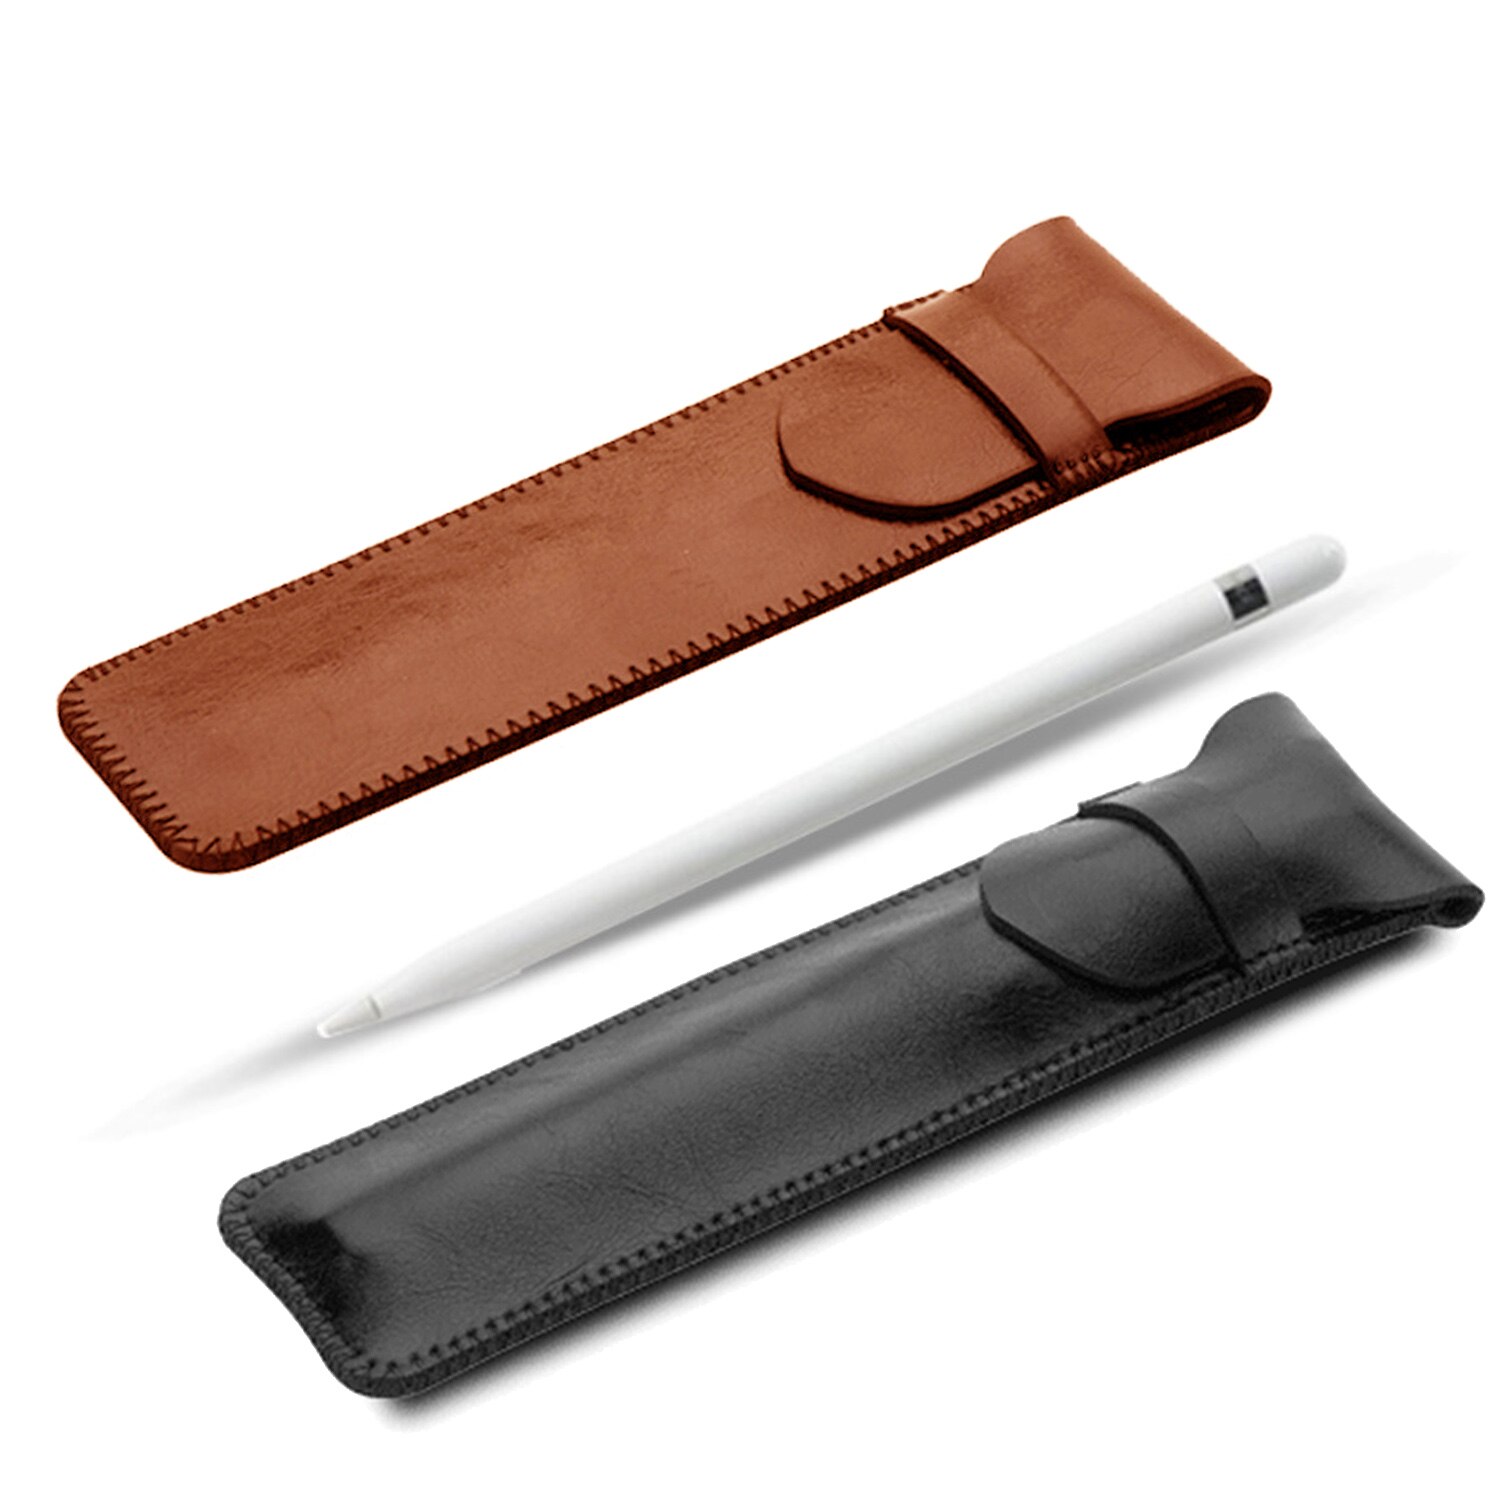 Besegad PU Lederen Beschermhoes Cover Sleeve Bag Houder voor Apple IPad i Pad Pro 12.9 Inch Potlood iPencil accessoires